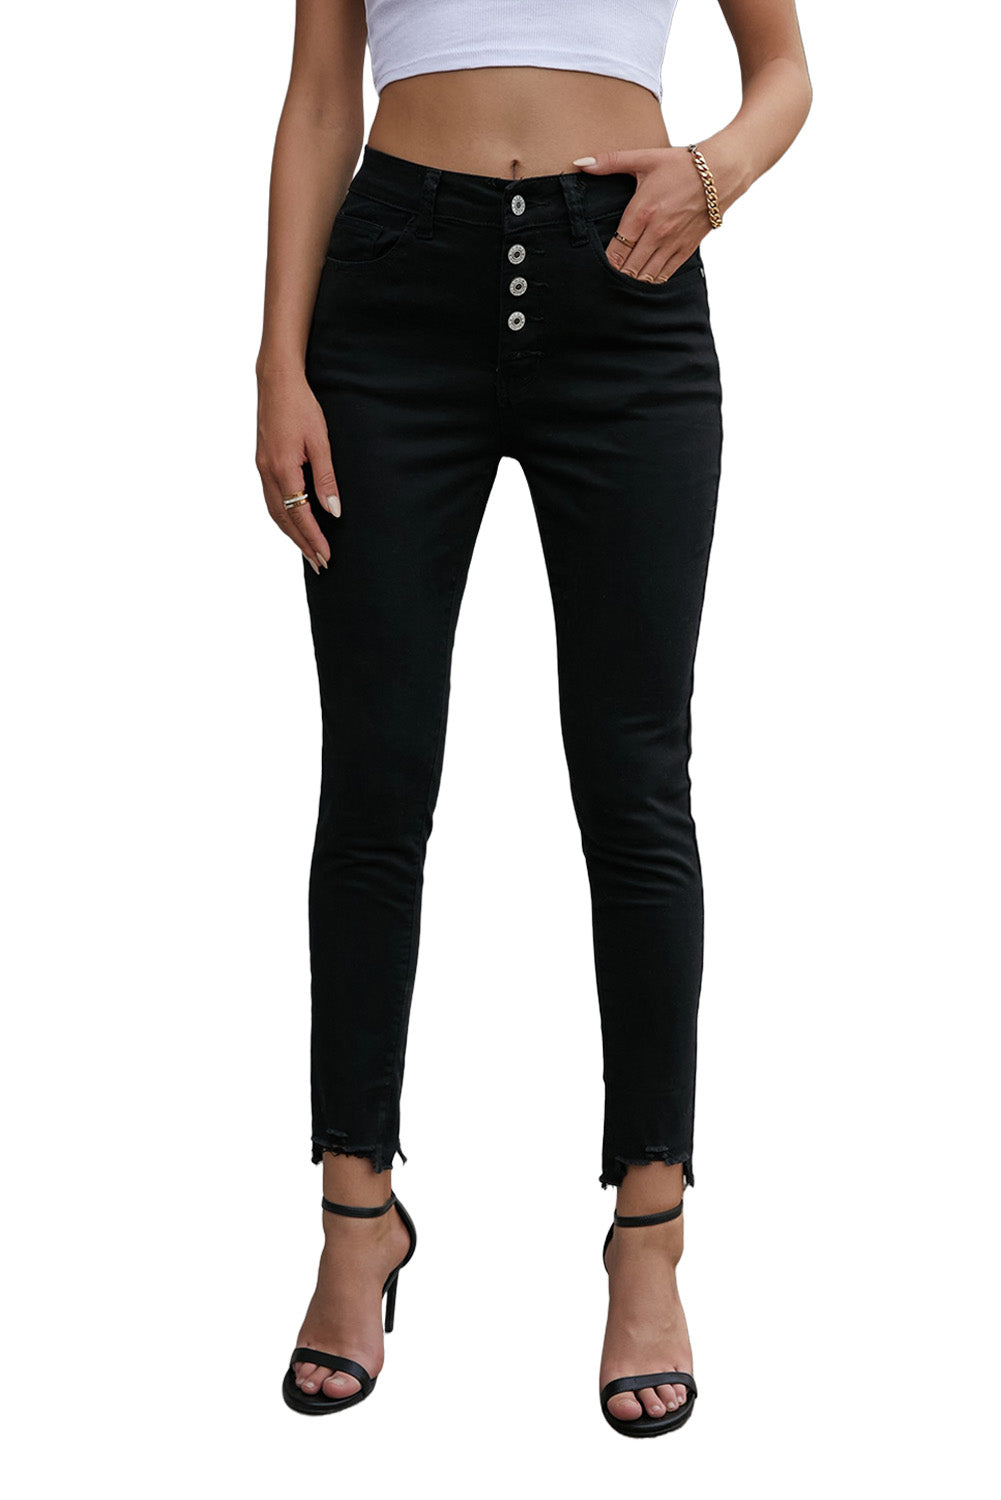 Women's Black Plain High Waist Buttons Frayed Cropped Denim Jeans